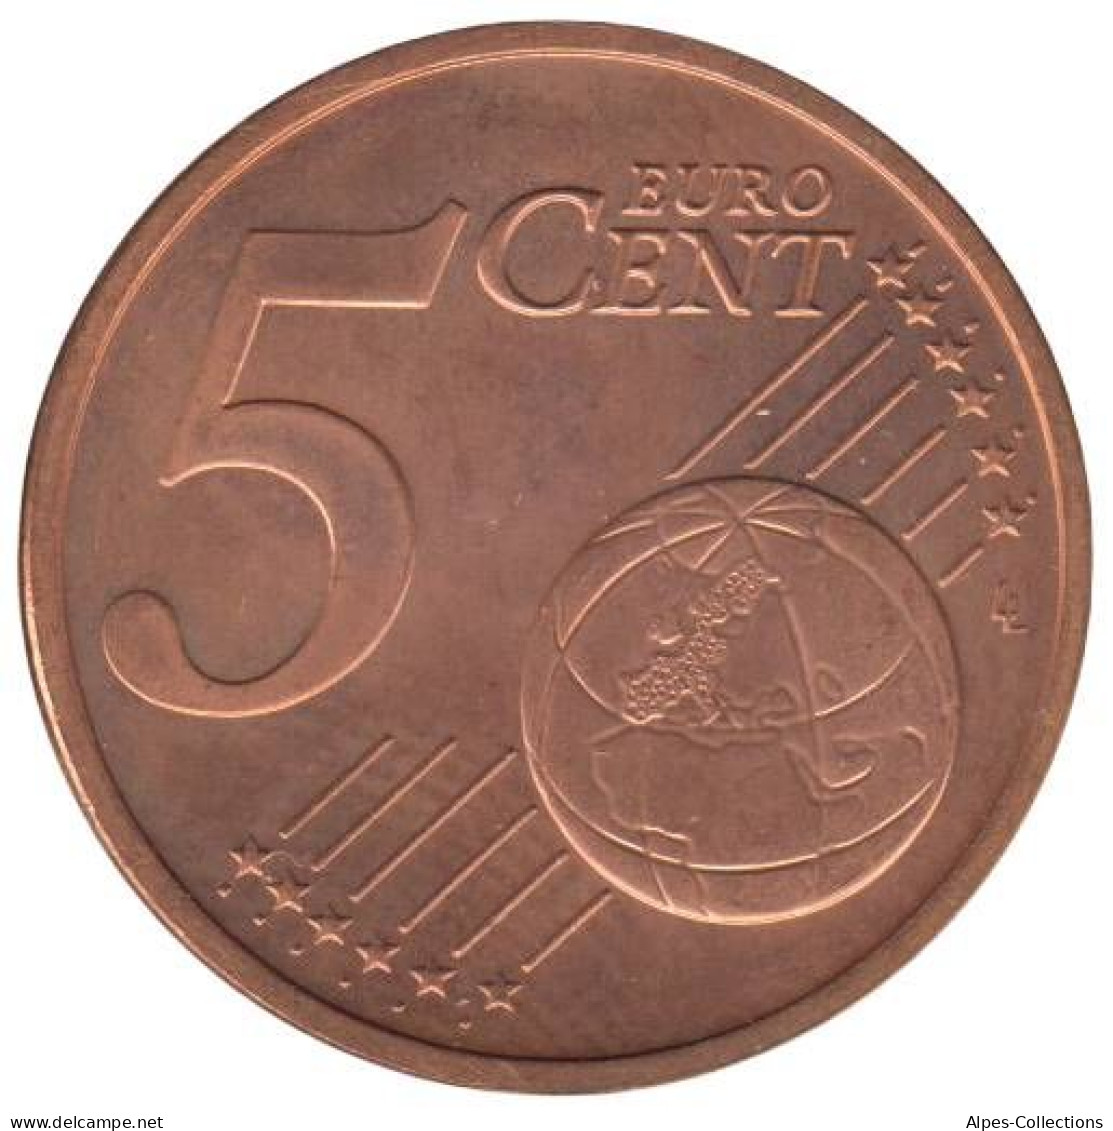 IR00504.1 - IRLANDE - 5 Cents - 2004 - Ireland